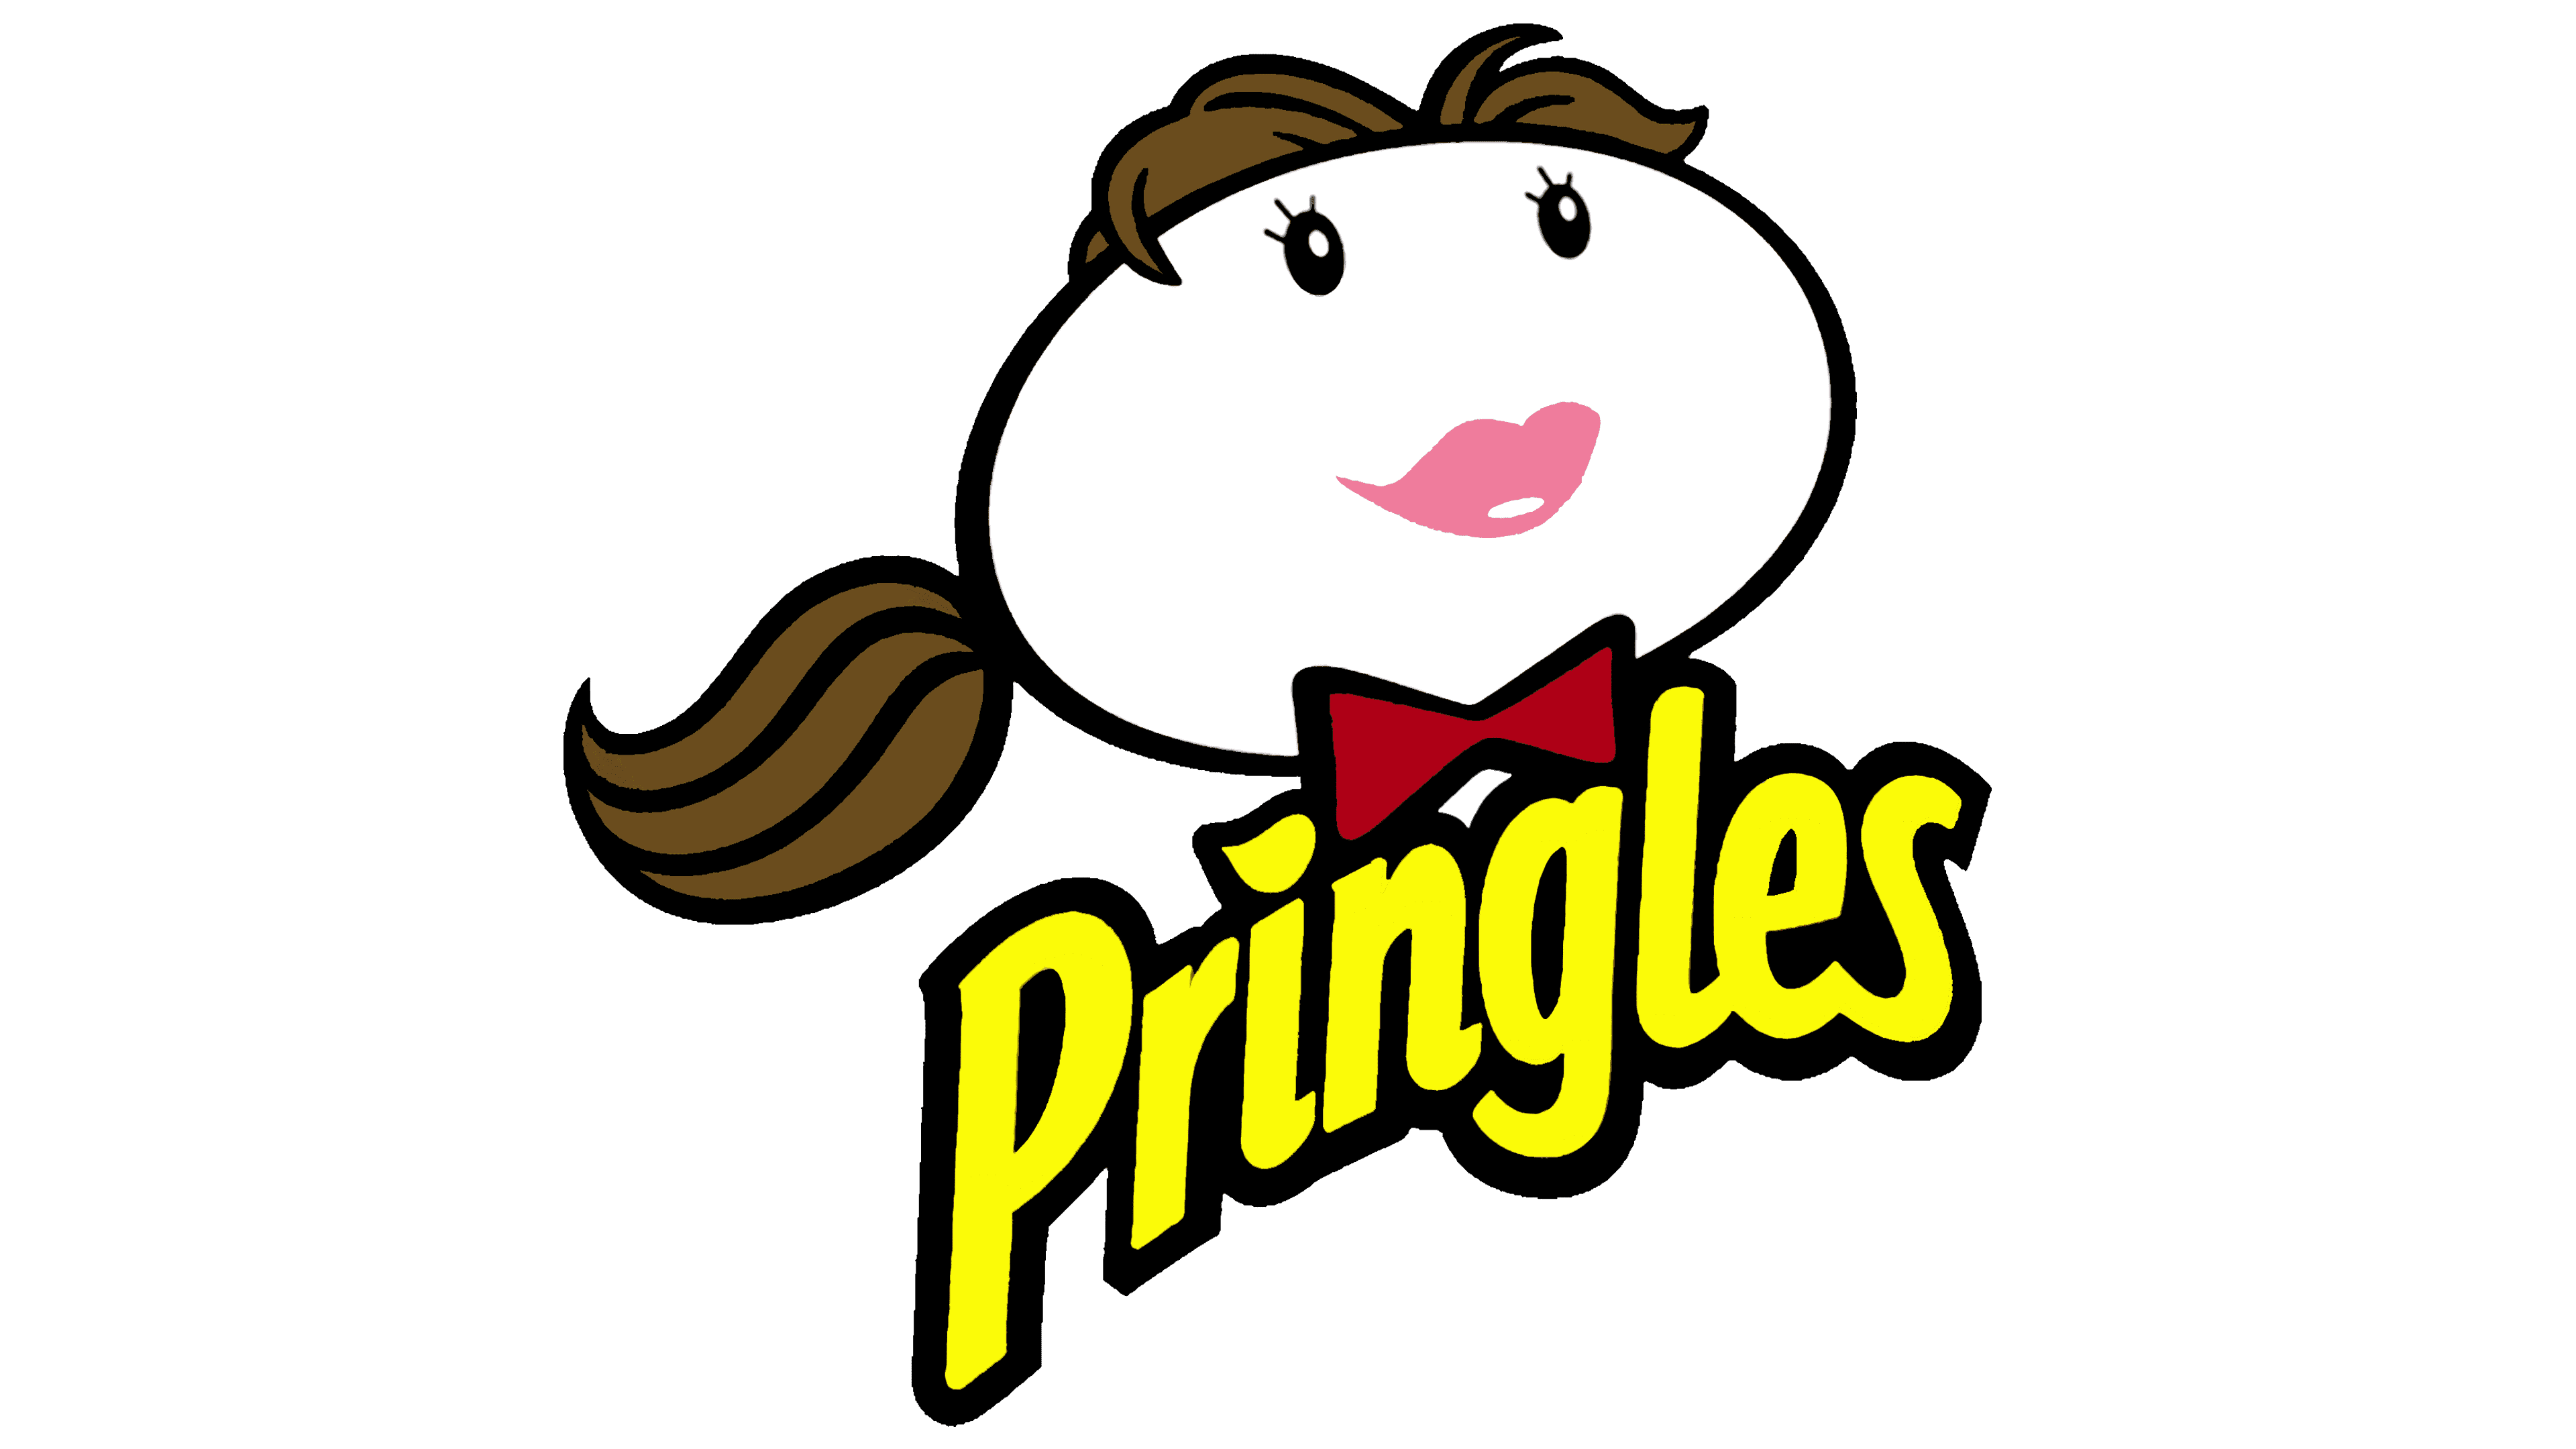 0 Result Images of Pringles Logo Transparent Background - PNG Image ...